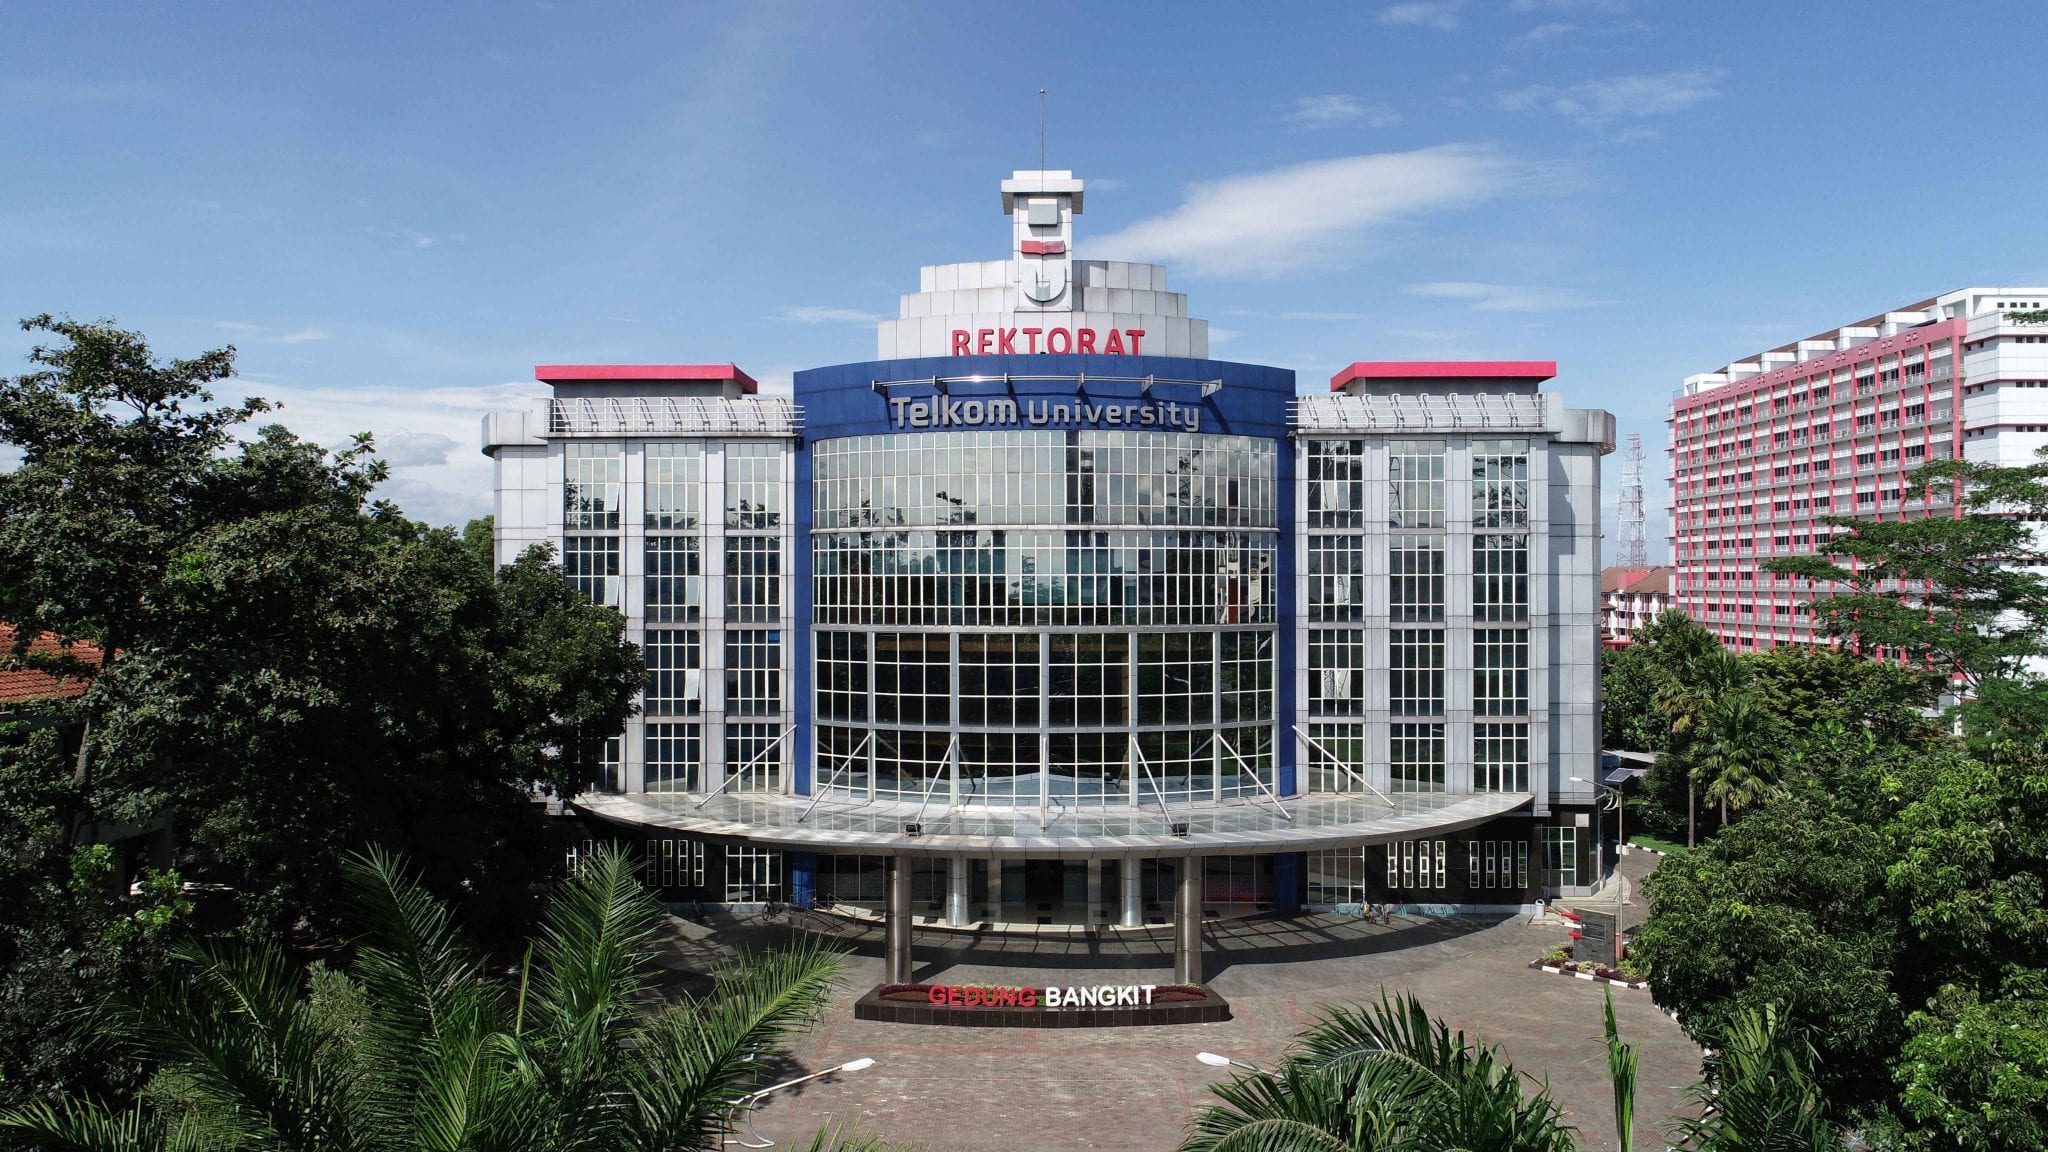 Telkom University, kampus swasta, perguruan tinggi terbaik di bandung indonesia, memiliki fasilitas laboratorium lengkap, menunjang riset dan belajar teknologi informasi komunikasi